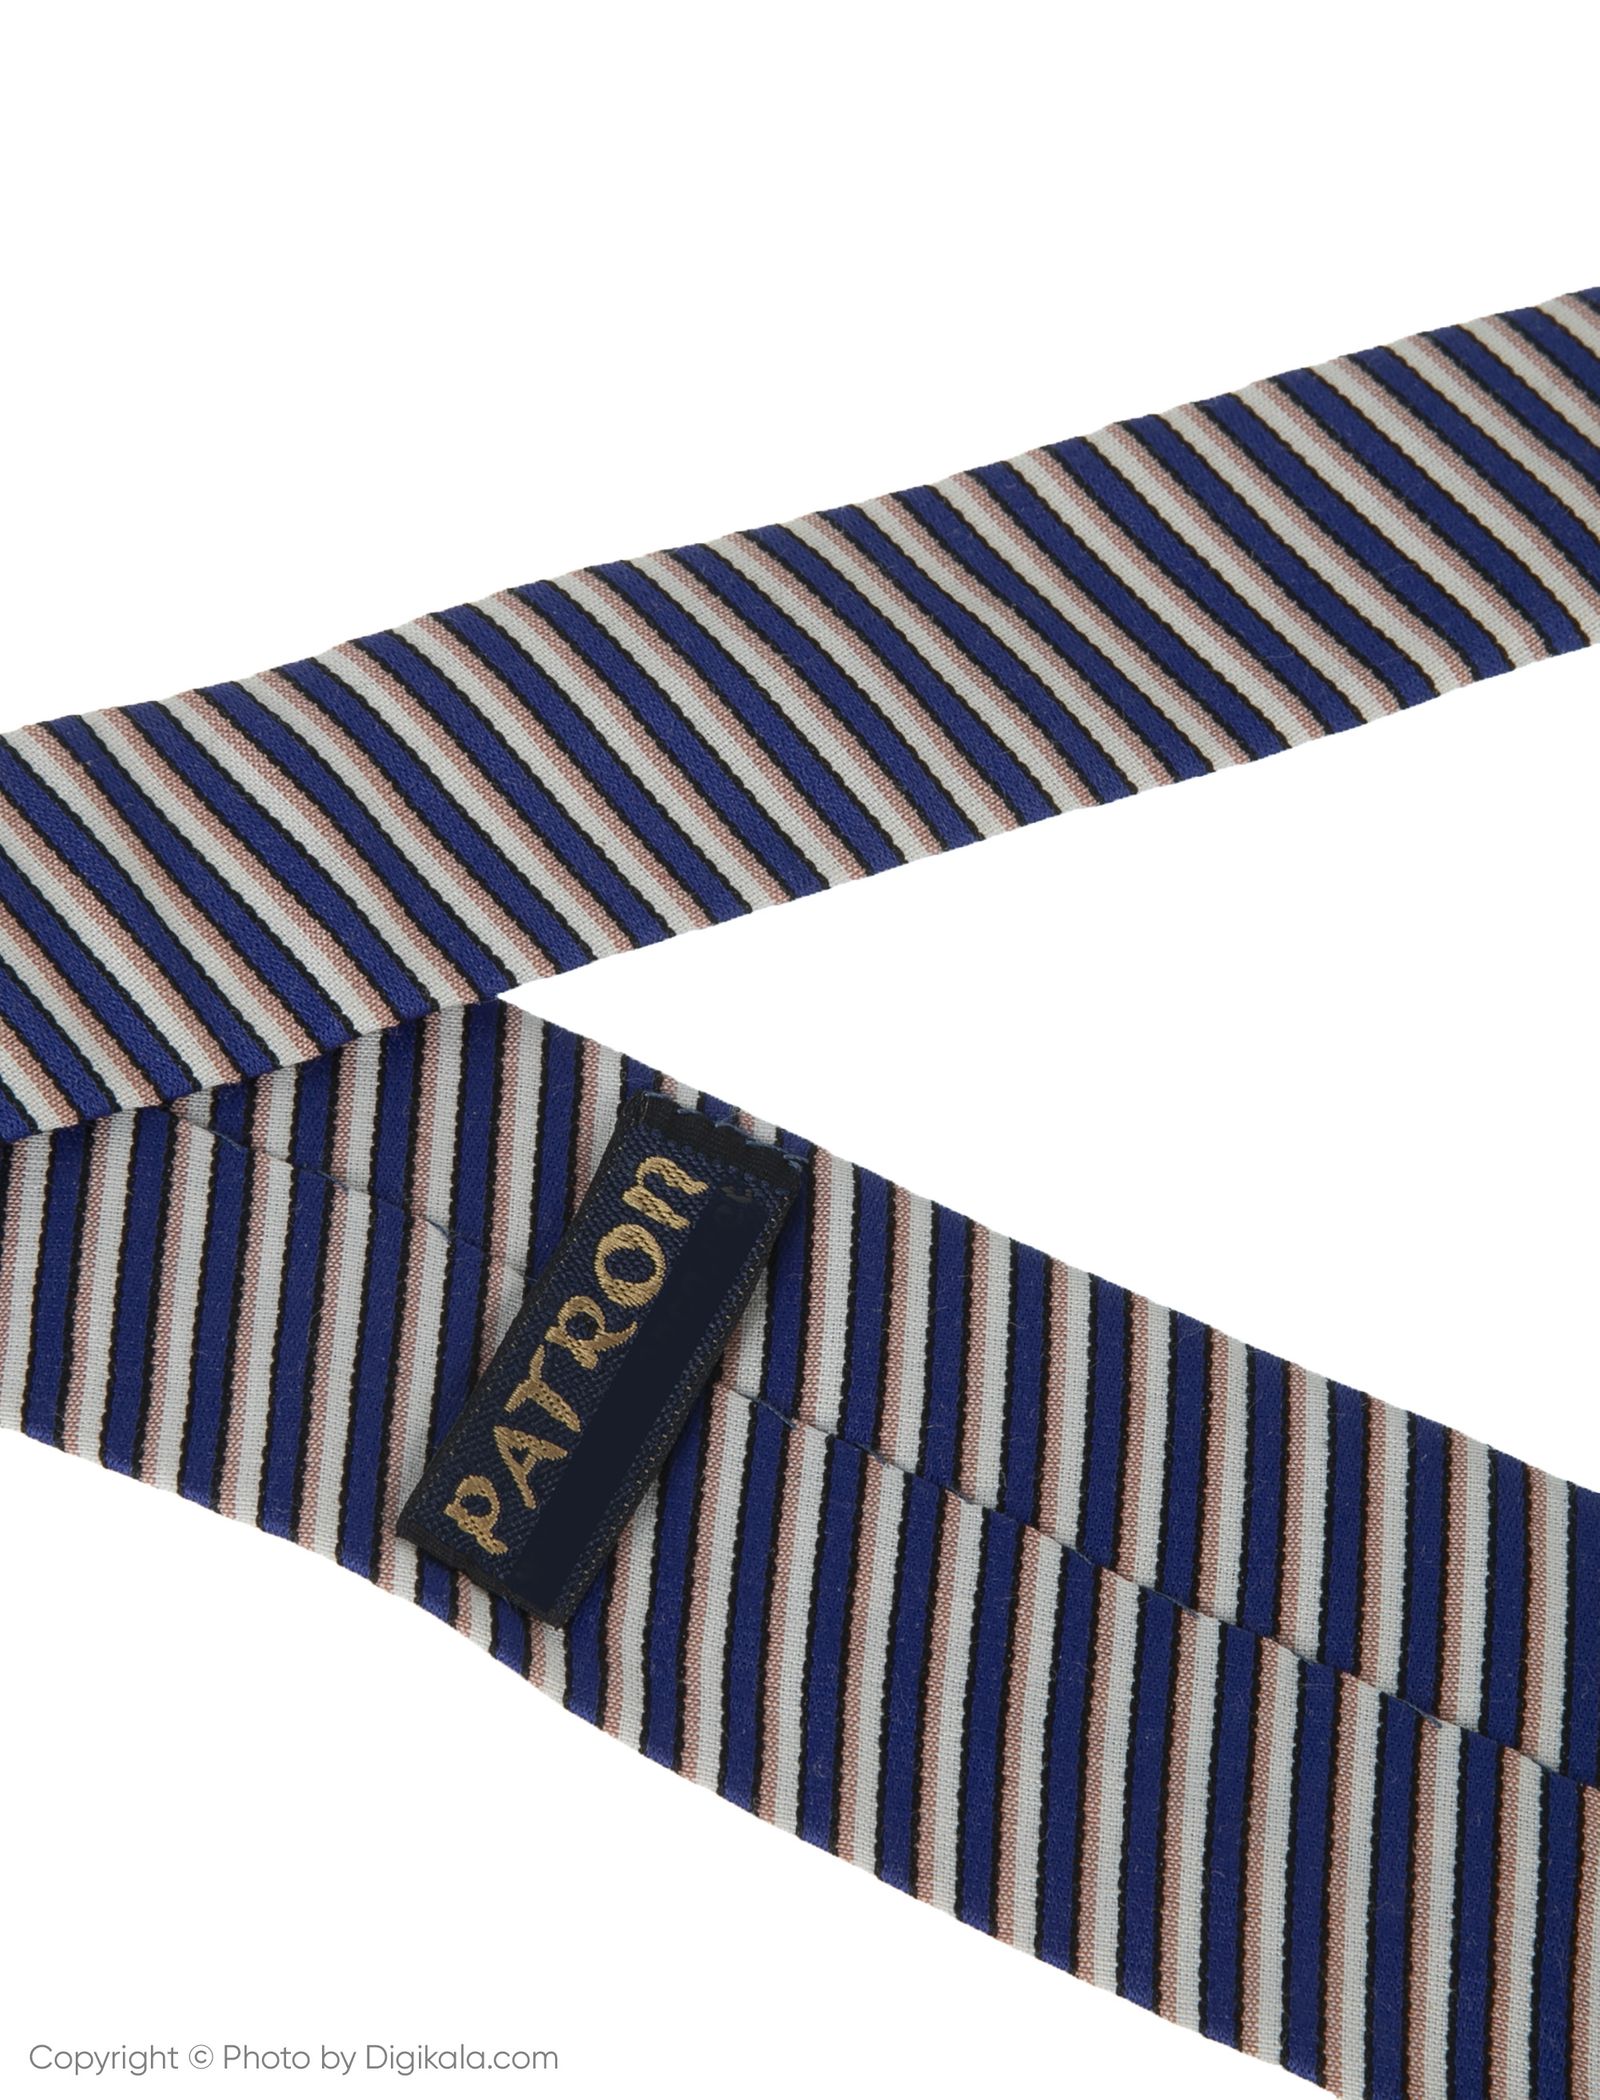 کراوات پاترون مدل TGBU5 - آبی صورتی - 5